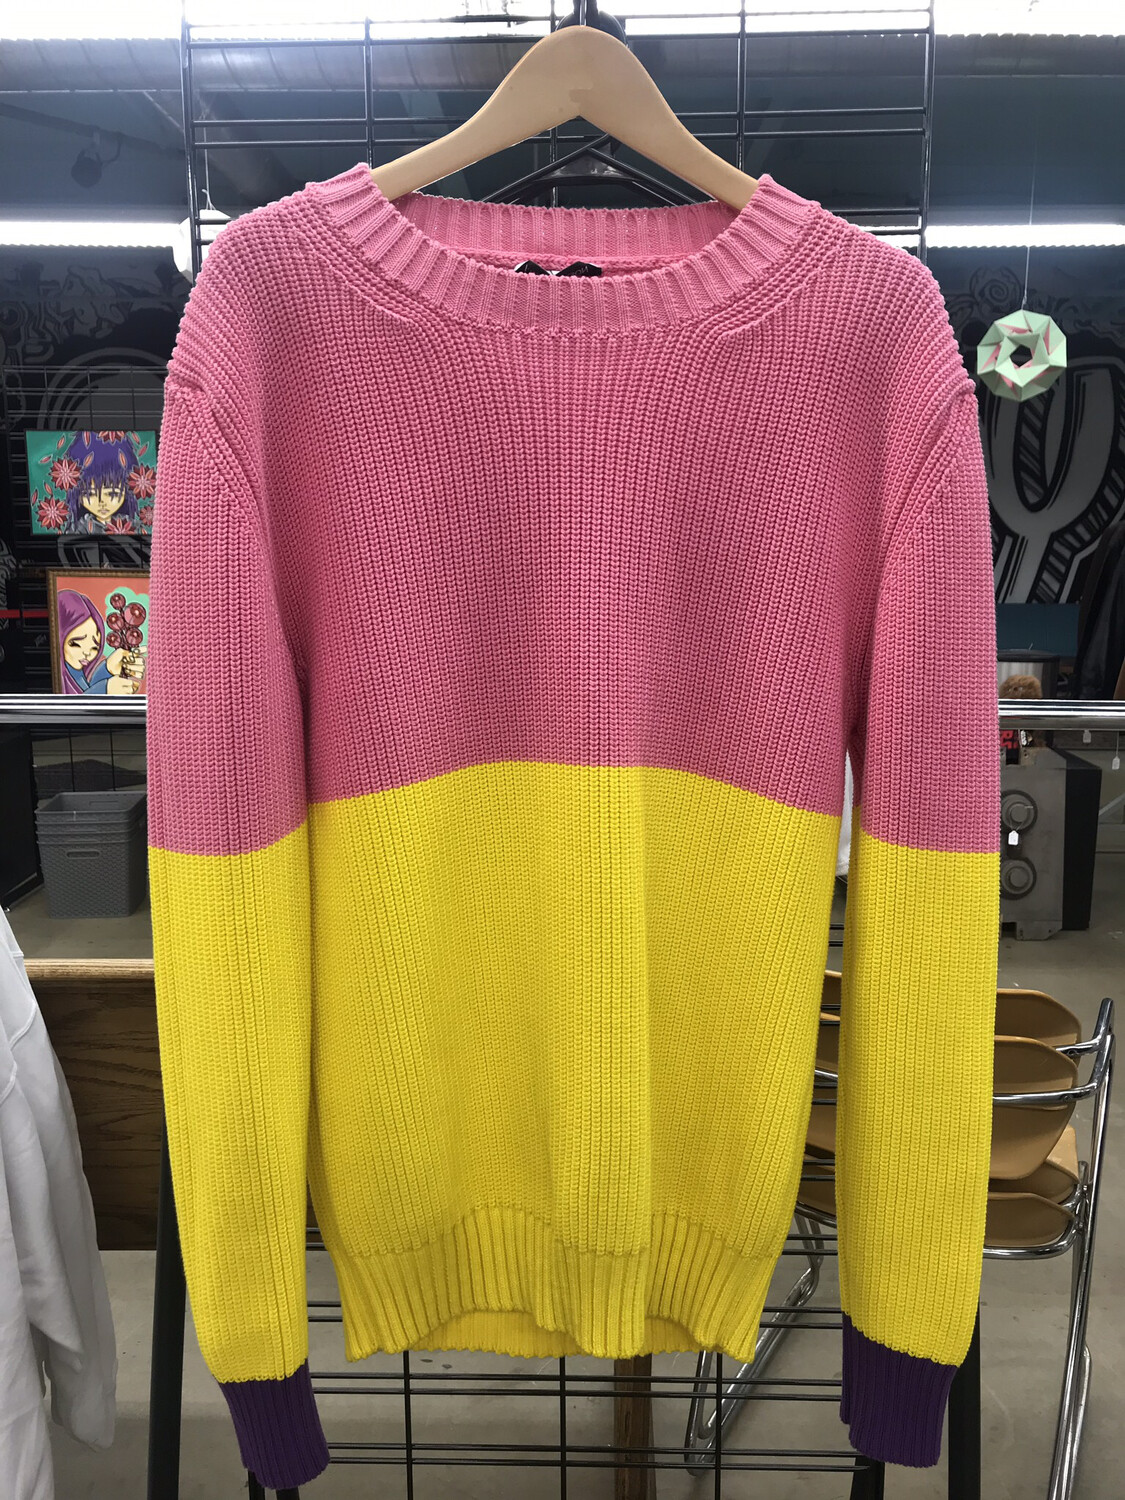 JW Anderson “Bubblegum” Tri-Colored Sweater